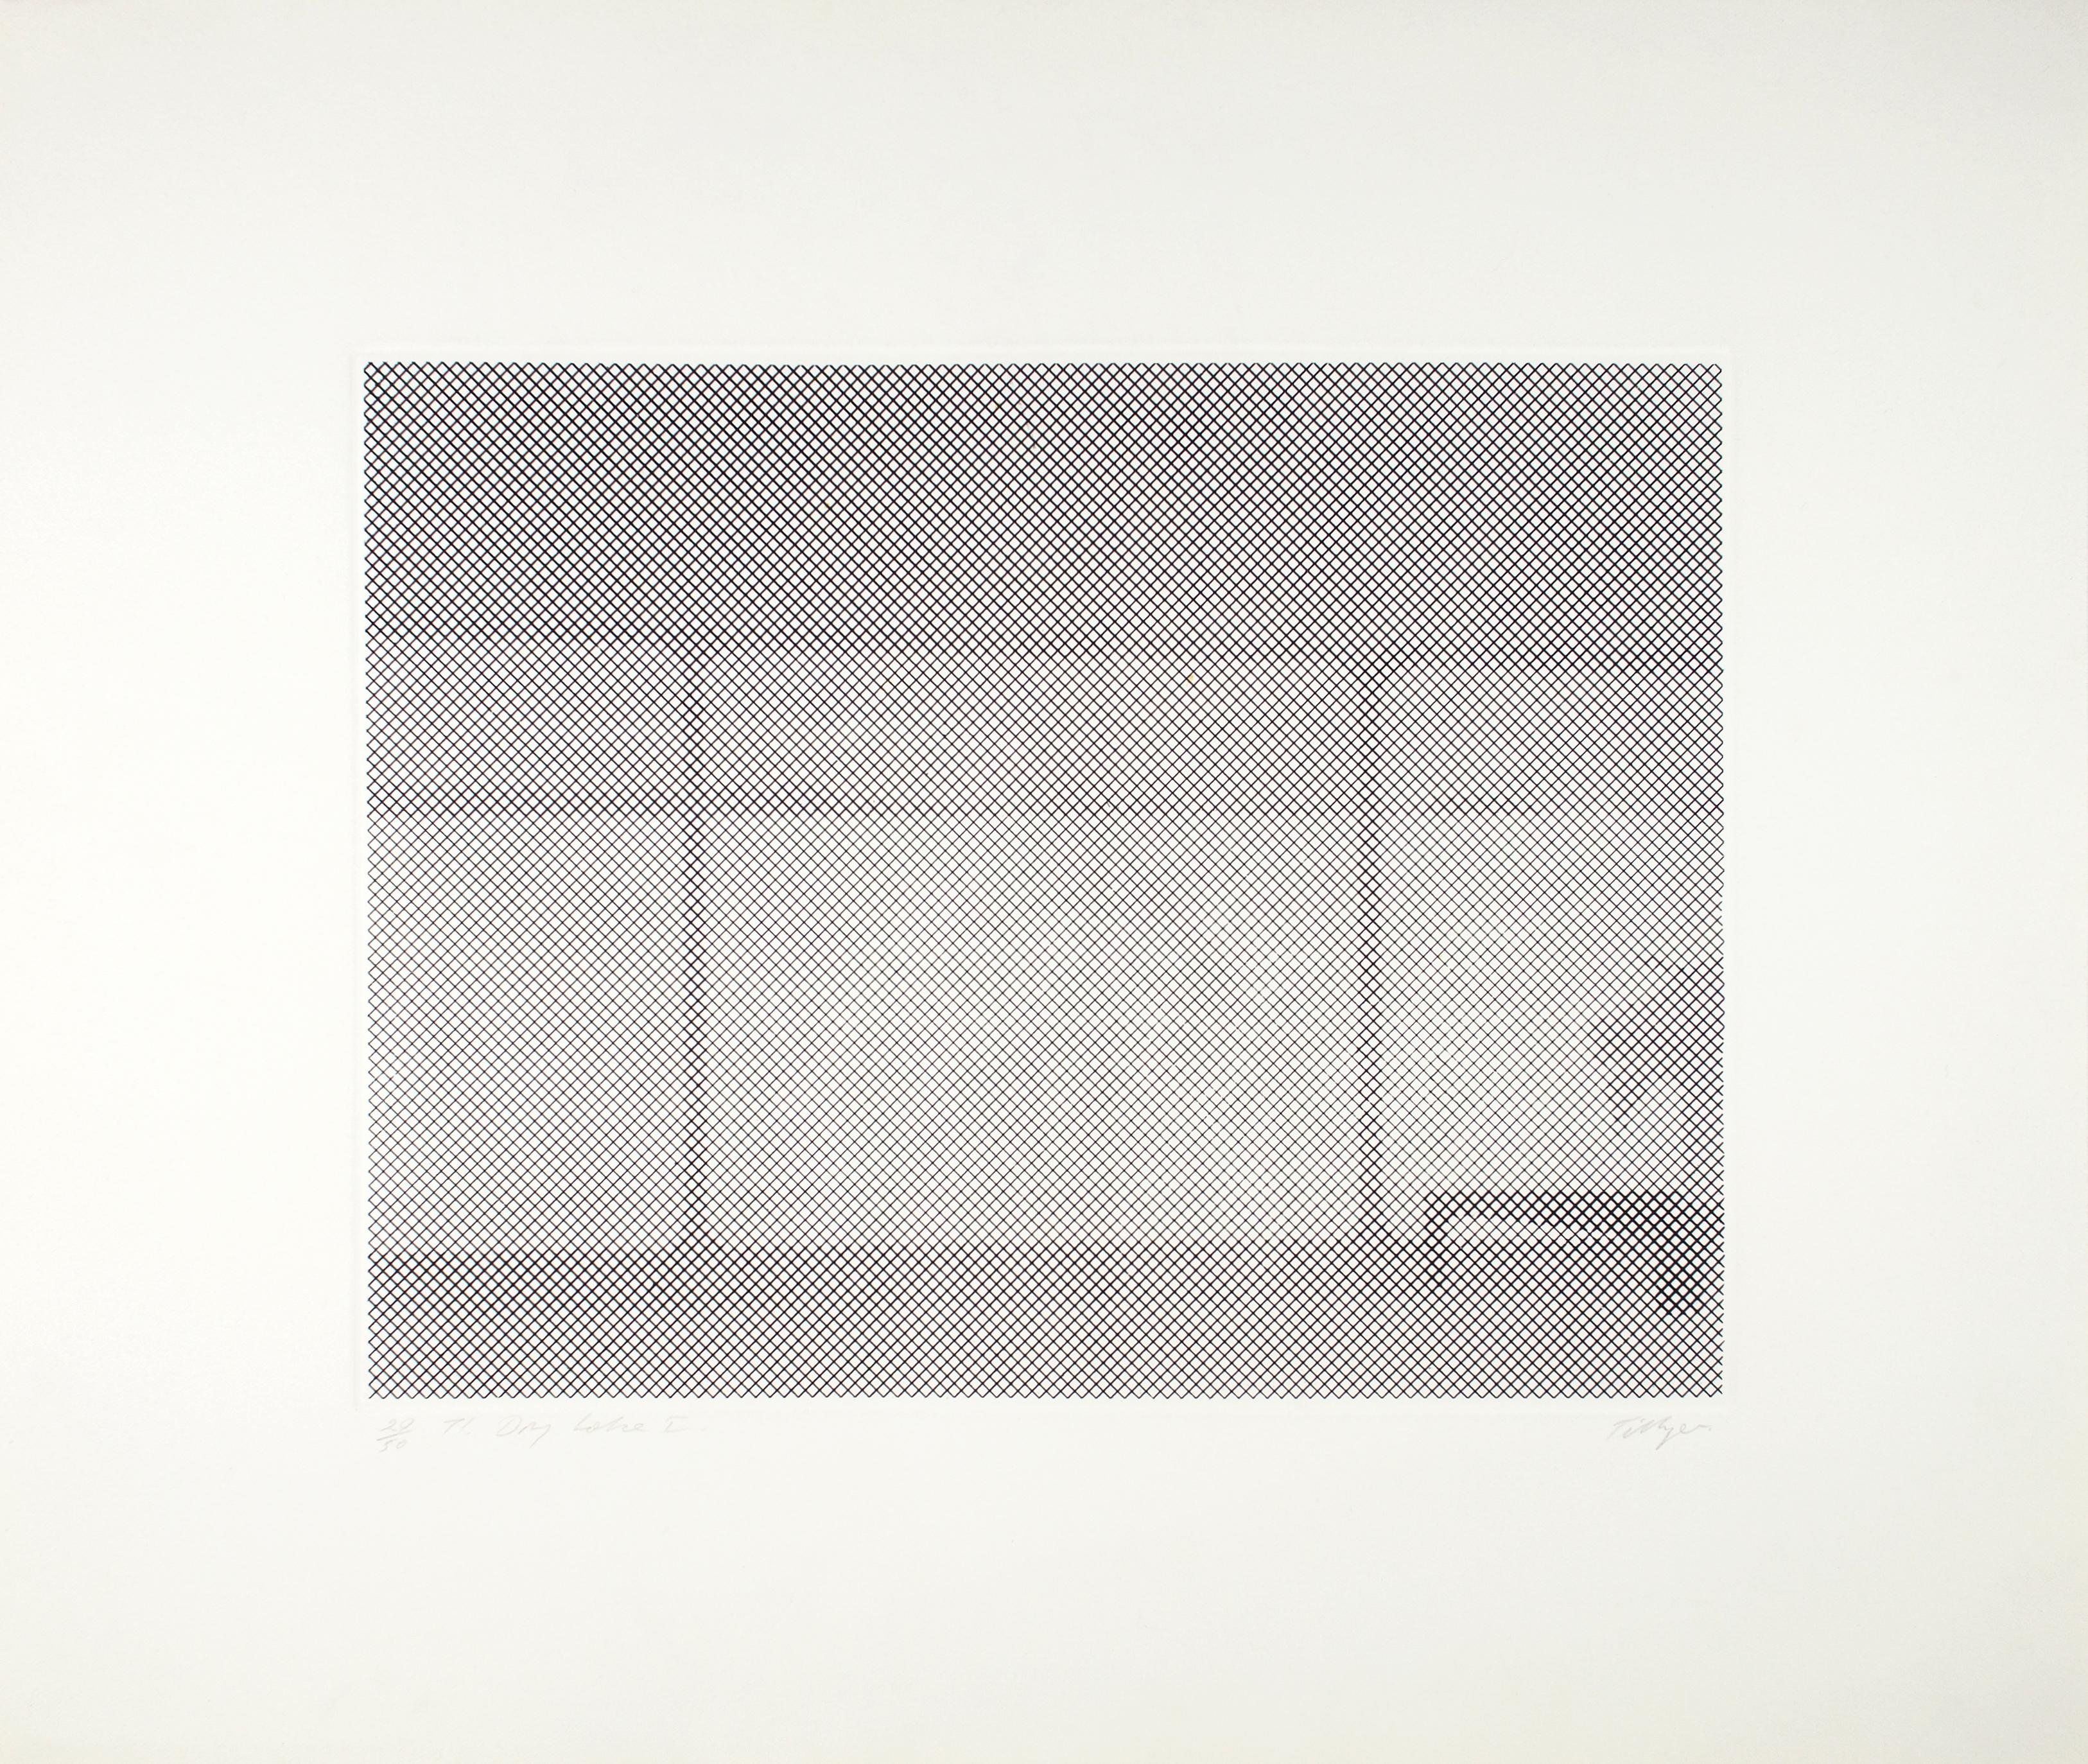 William Tillyer
Lac sec I-IV
1971
Gravure à l'eau-forte
Edition de 50
55.9 x 66,7 cm (22 x 26 1/4 ins) (format papier)
32.4 x 43.4 cm (12 3/4 x 17 1/8 ins) (taille de la plaque)
WTE019